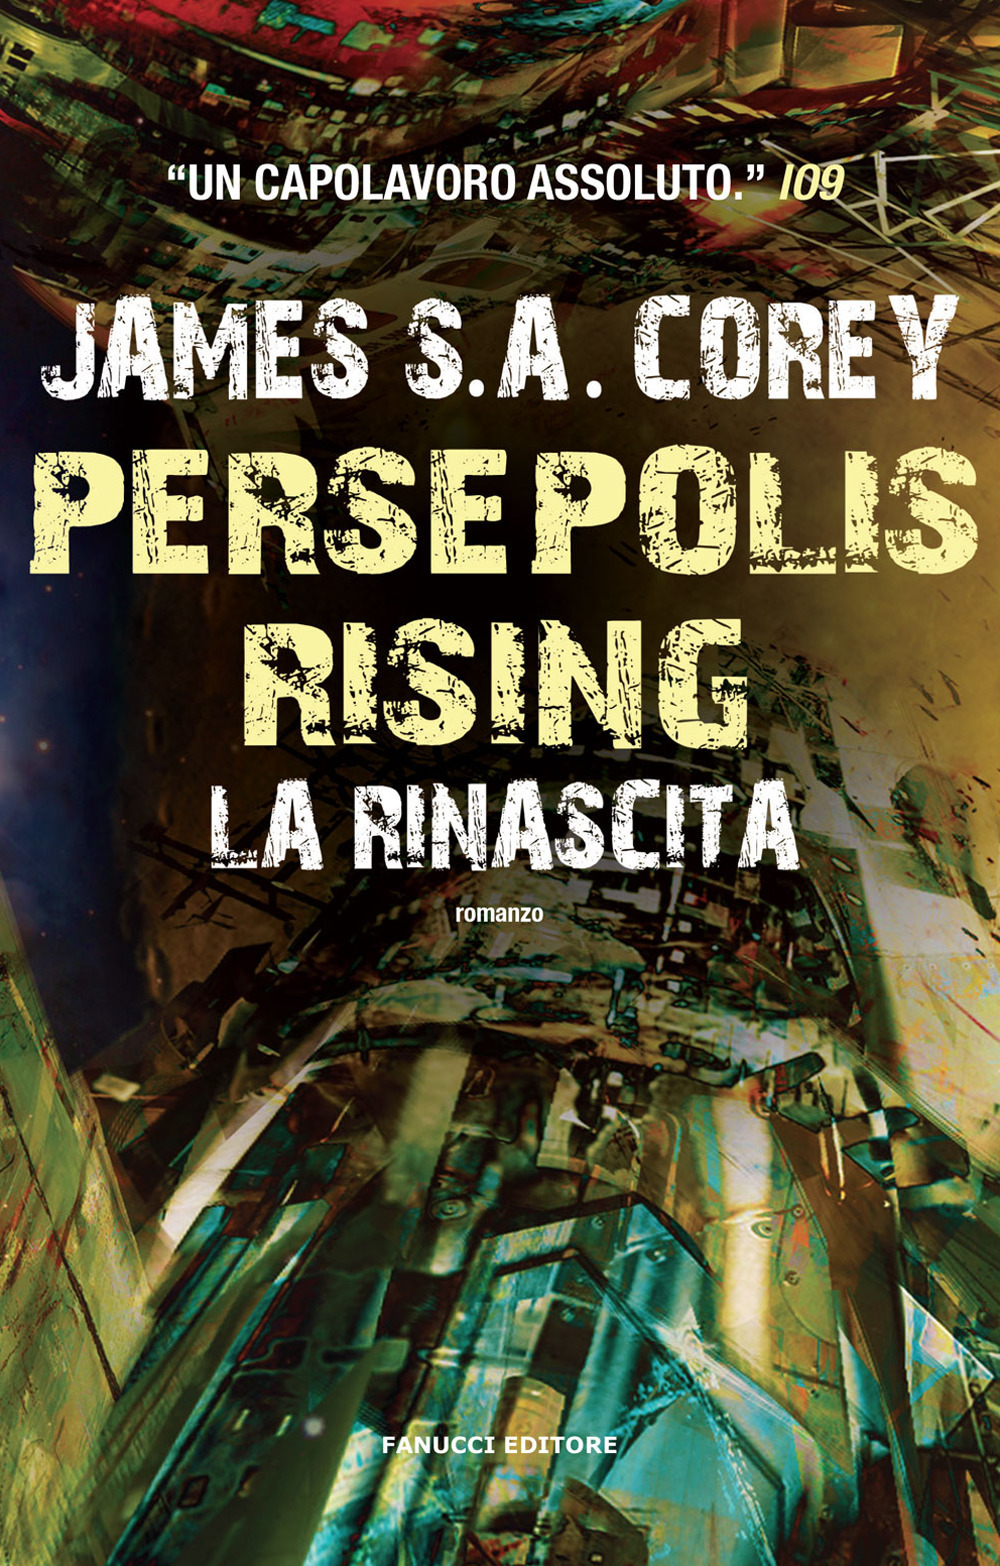 Libri Corey James S. A. - Persepolis Rising. La Rinascita NUOVO SIGILLATO, EDIZIONE DEL 28/02/2018 SUBITO DISPONIBILE